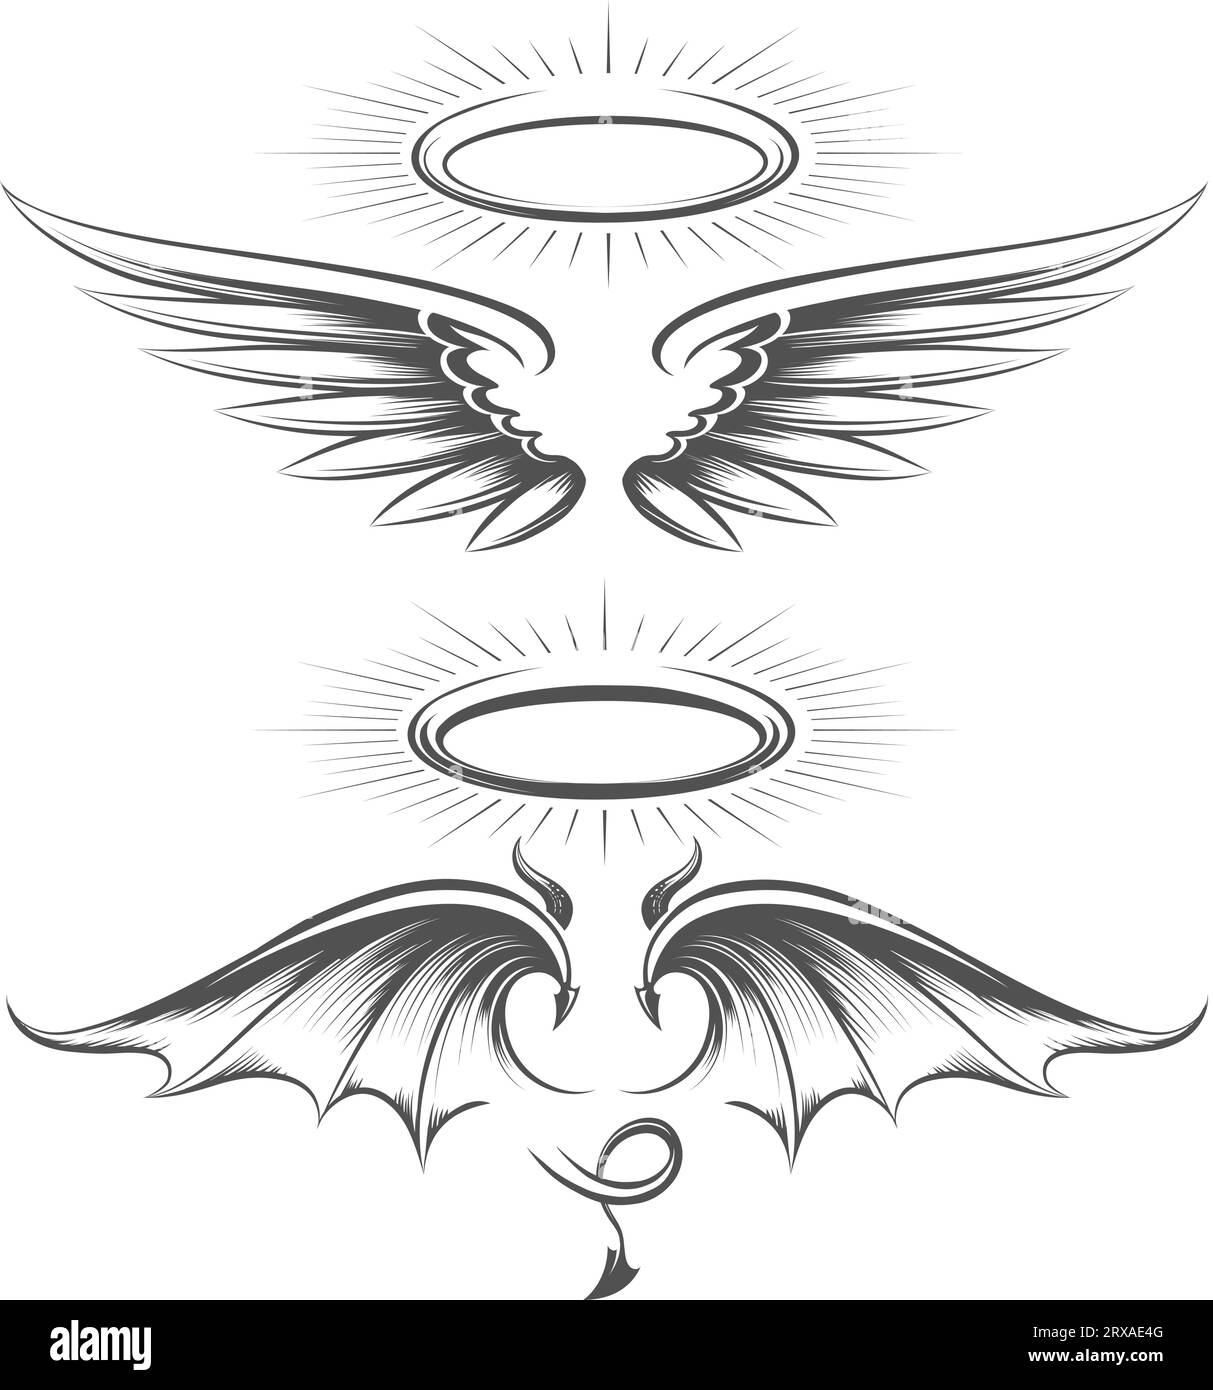 Ailes de diable d'ange et croquis de halo Illustration de Vecteur